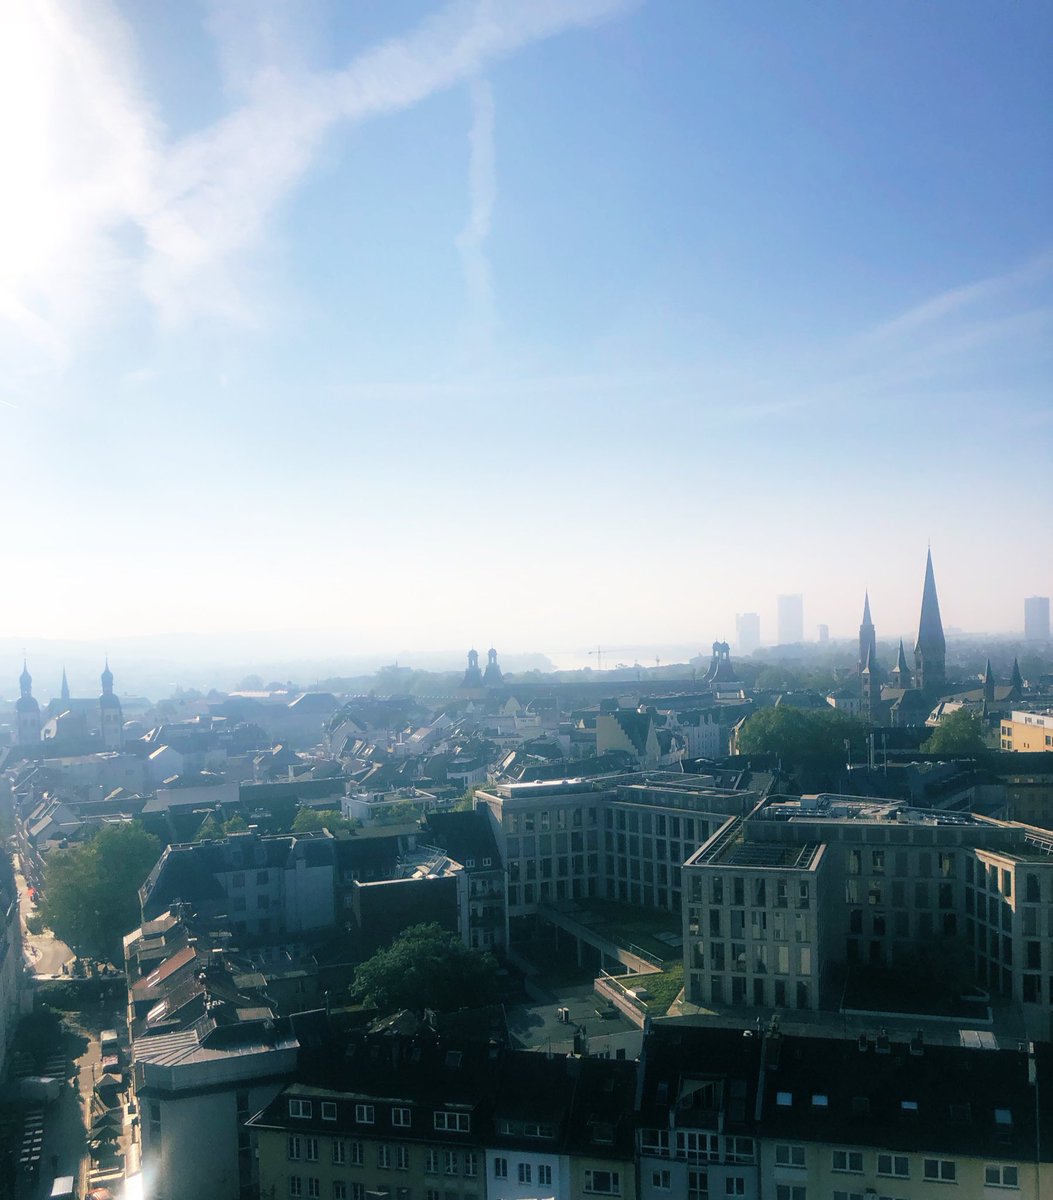 Guten Morgen Bonn, weiter gehts für Klimaschutz und Zusammenhalt in unserer wunderschönen Stadt 💚